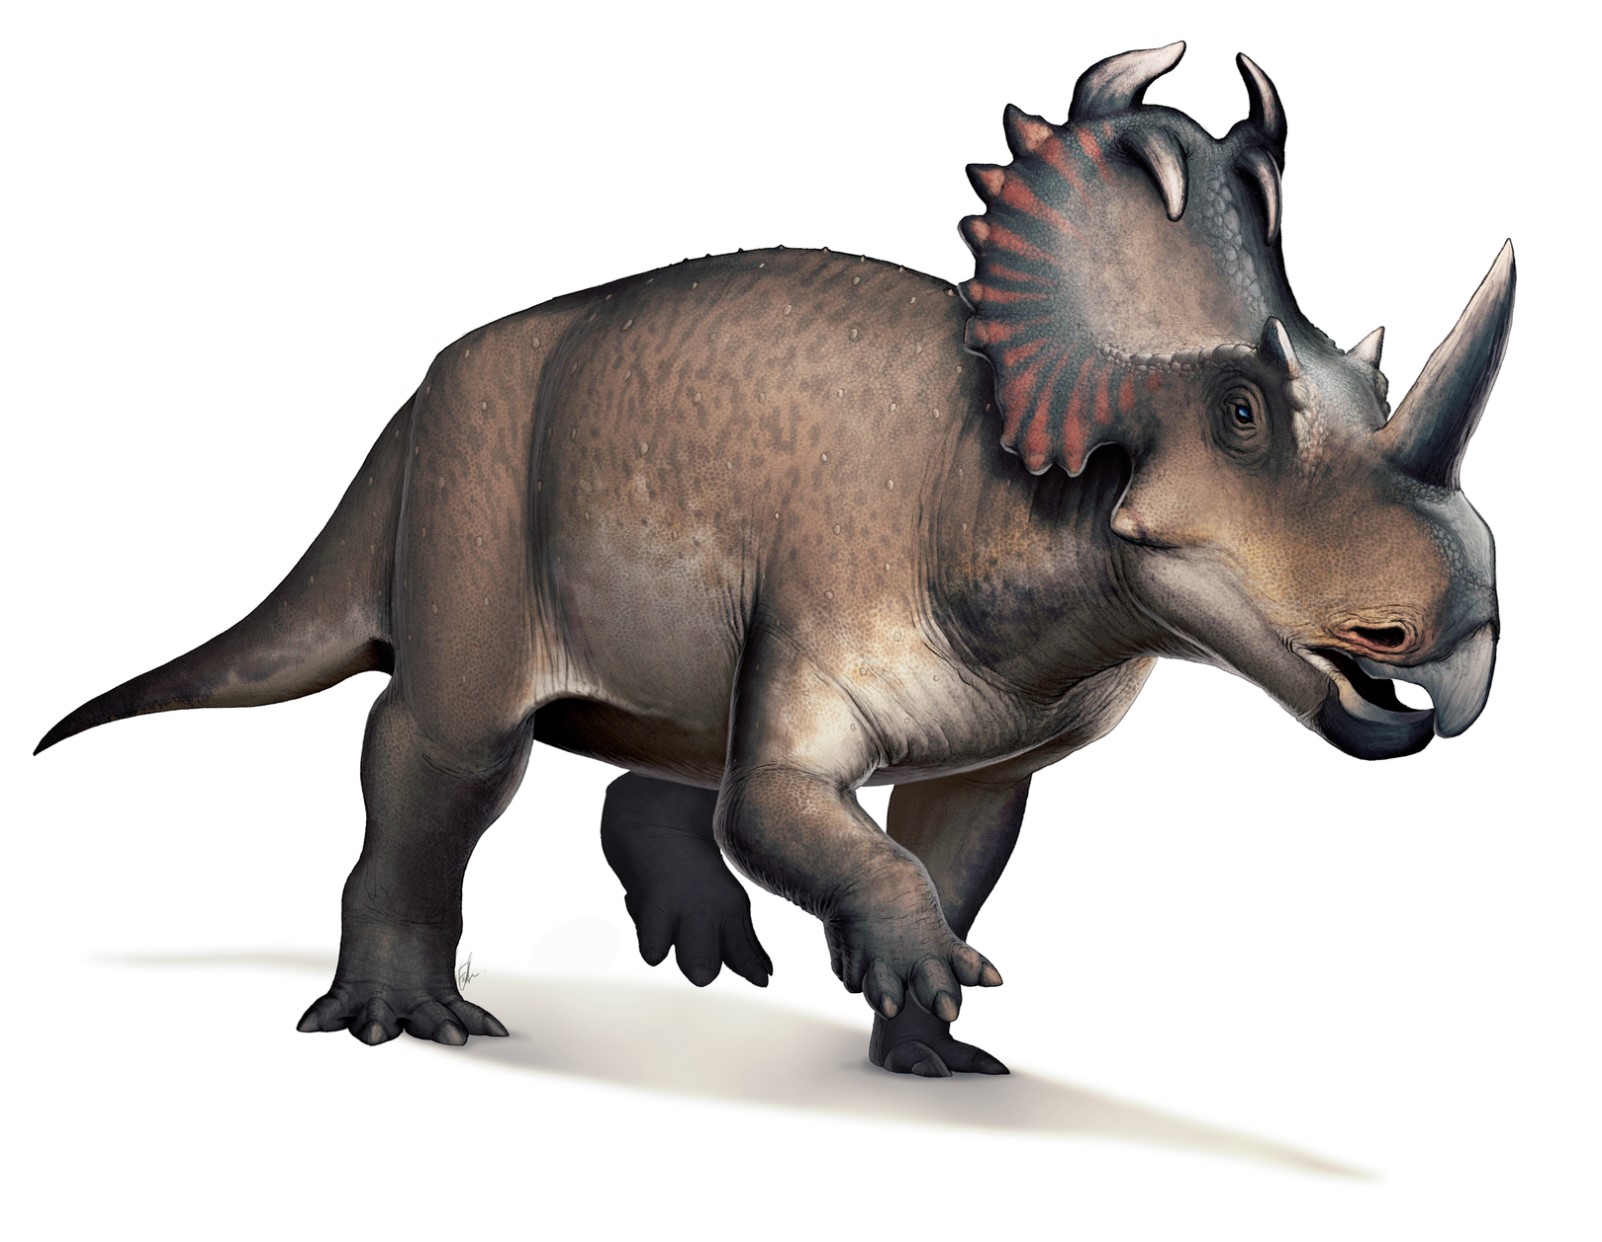 A centrosaurus